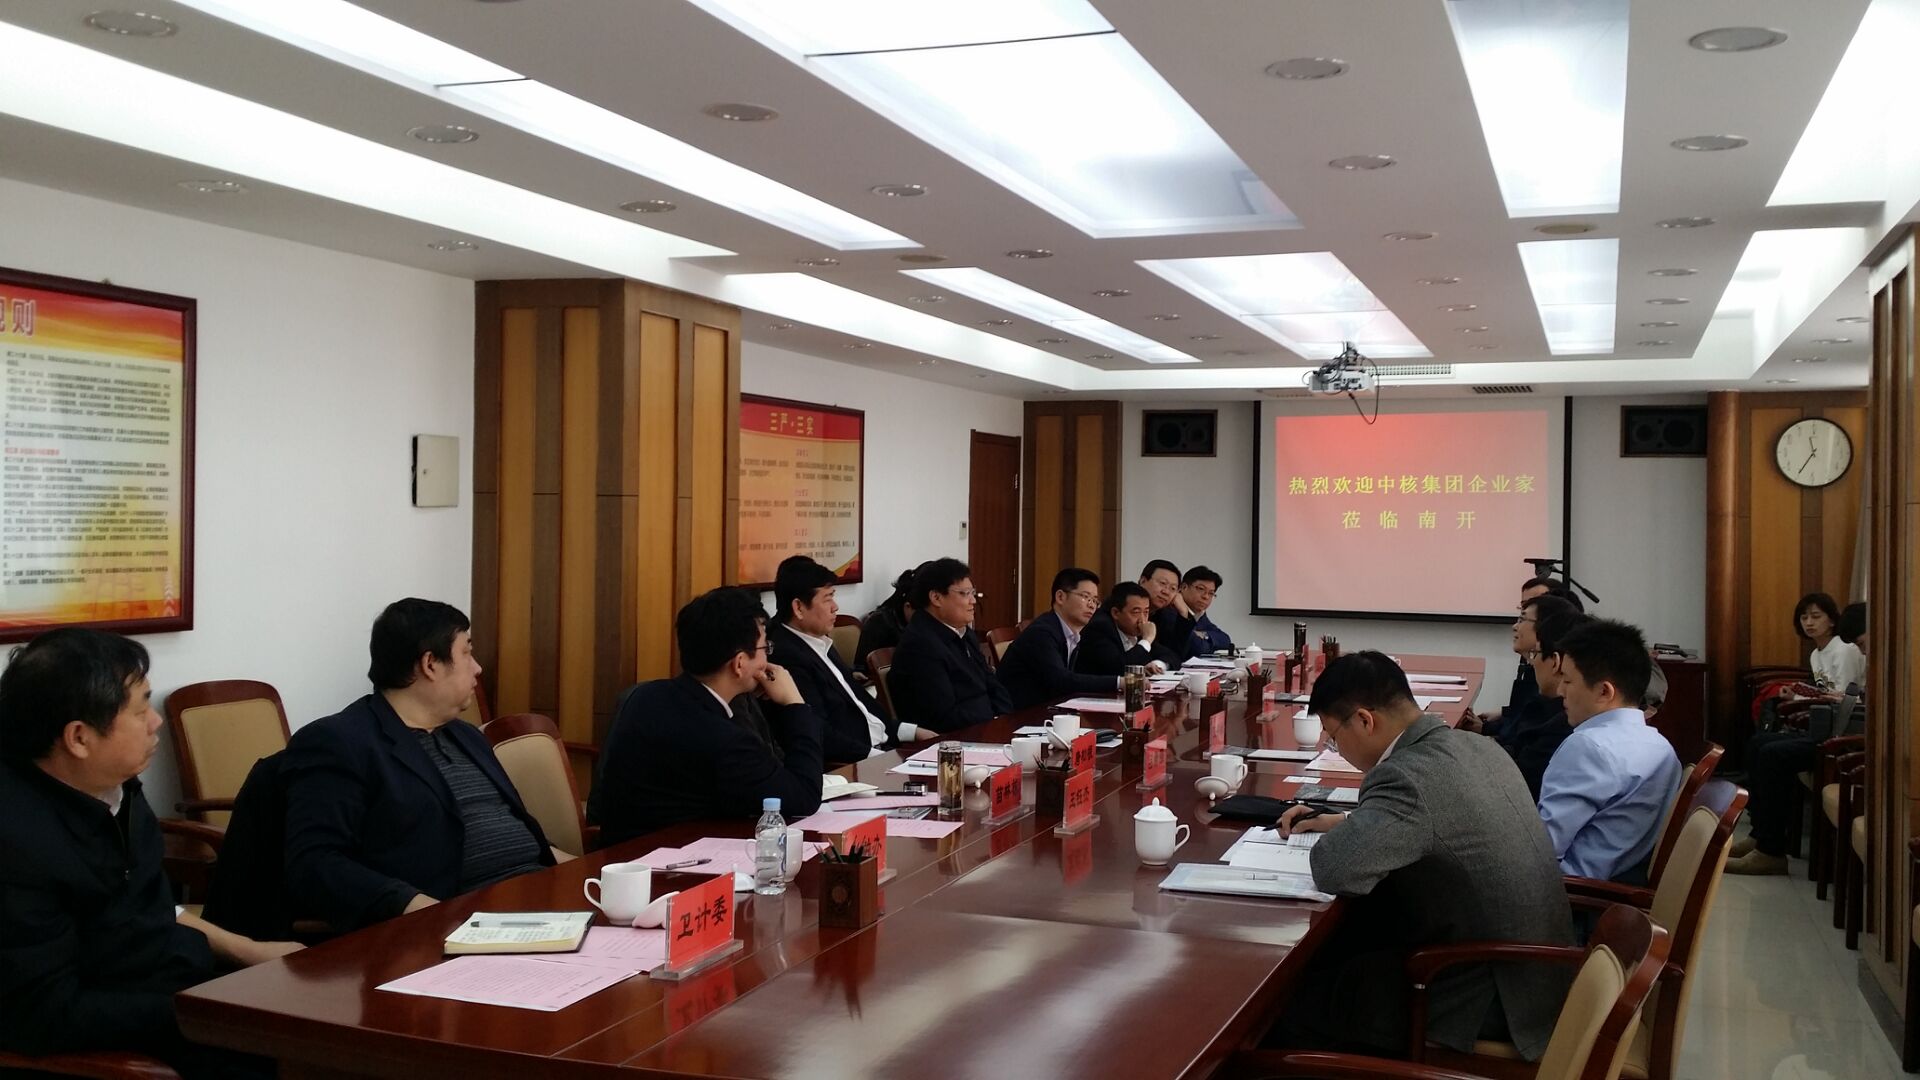 中核产业基金管理（北京）有限公司赴南开投资考察